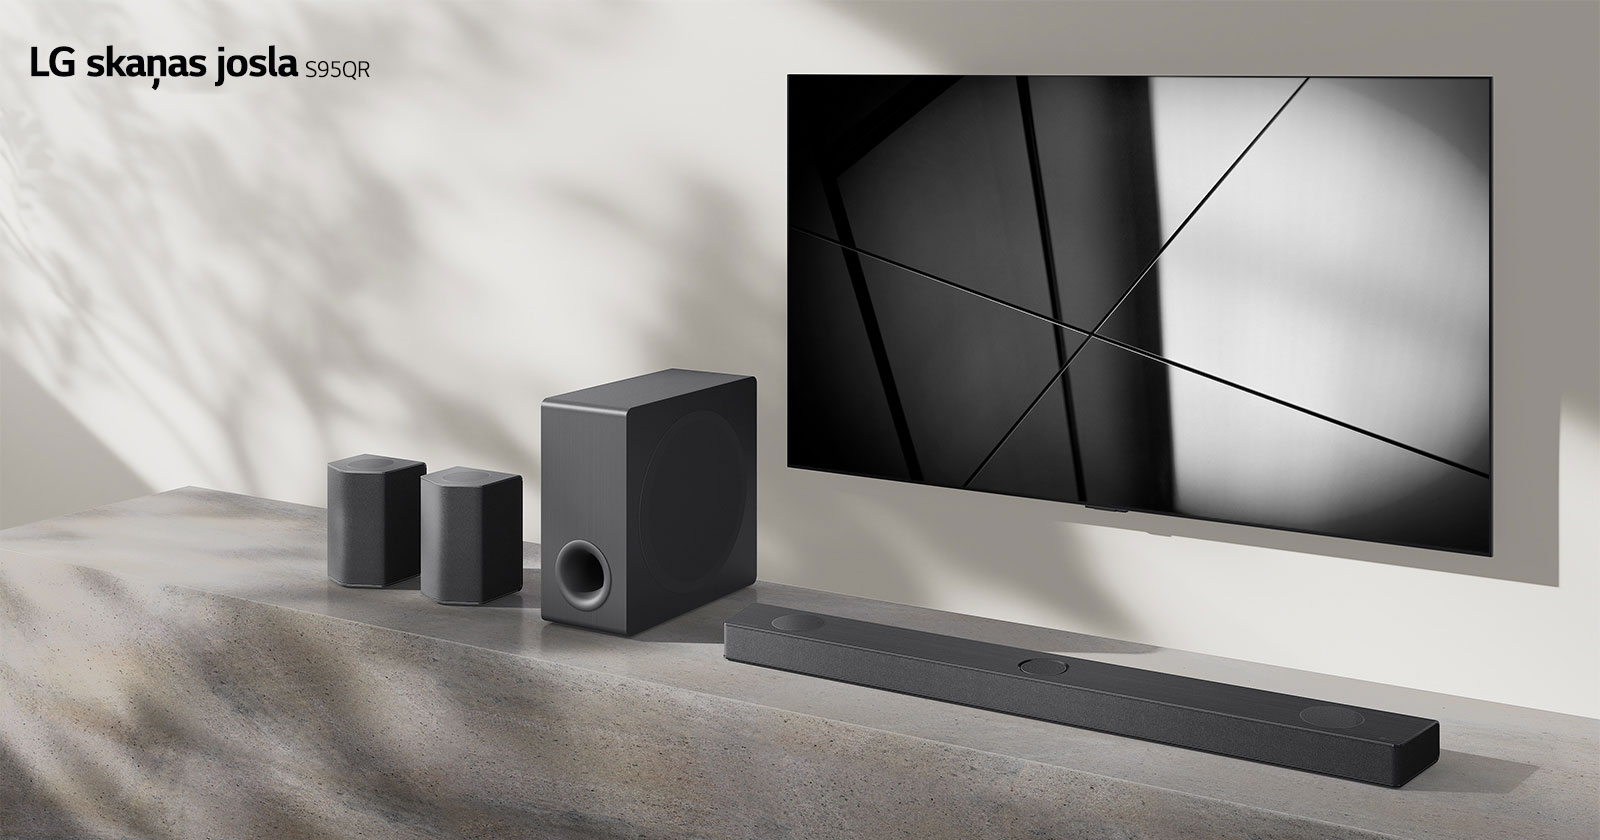 LG skaņas josla S95QR un LG televizors ir novietoti kopā viesistabā. Televizors ir ieslēgts, un tiek rādīts melnbalts attēls.